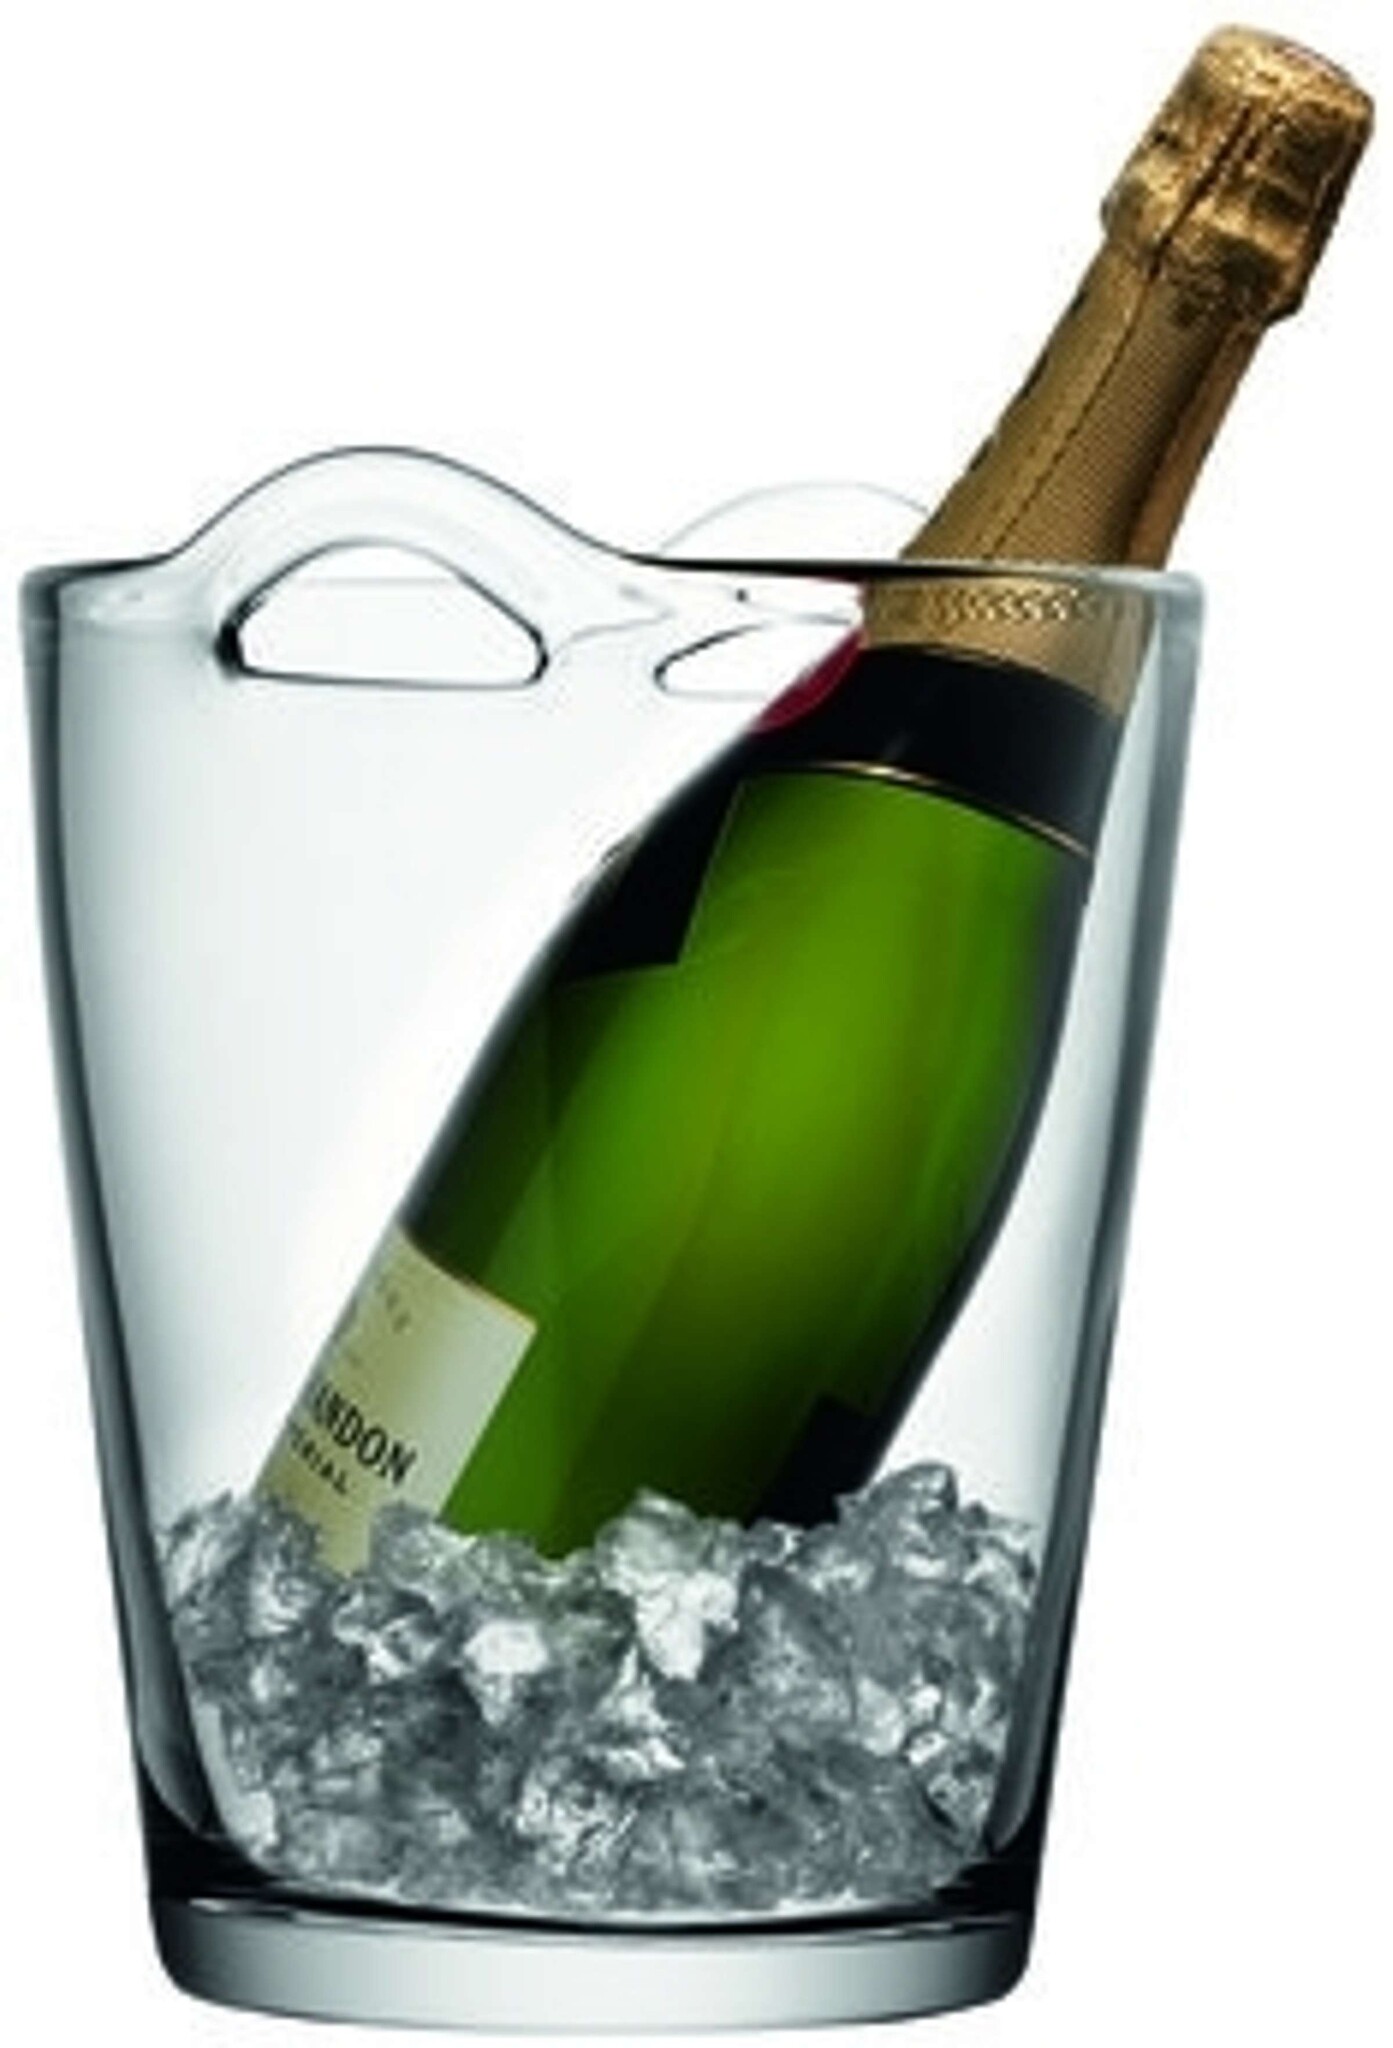 L.S.A. Bar Champagner-Kühler 26 cm